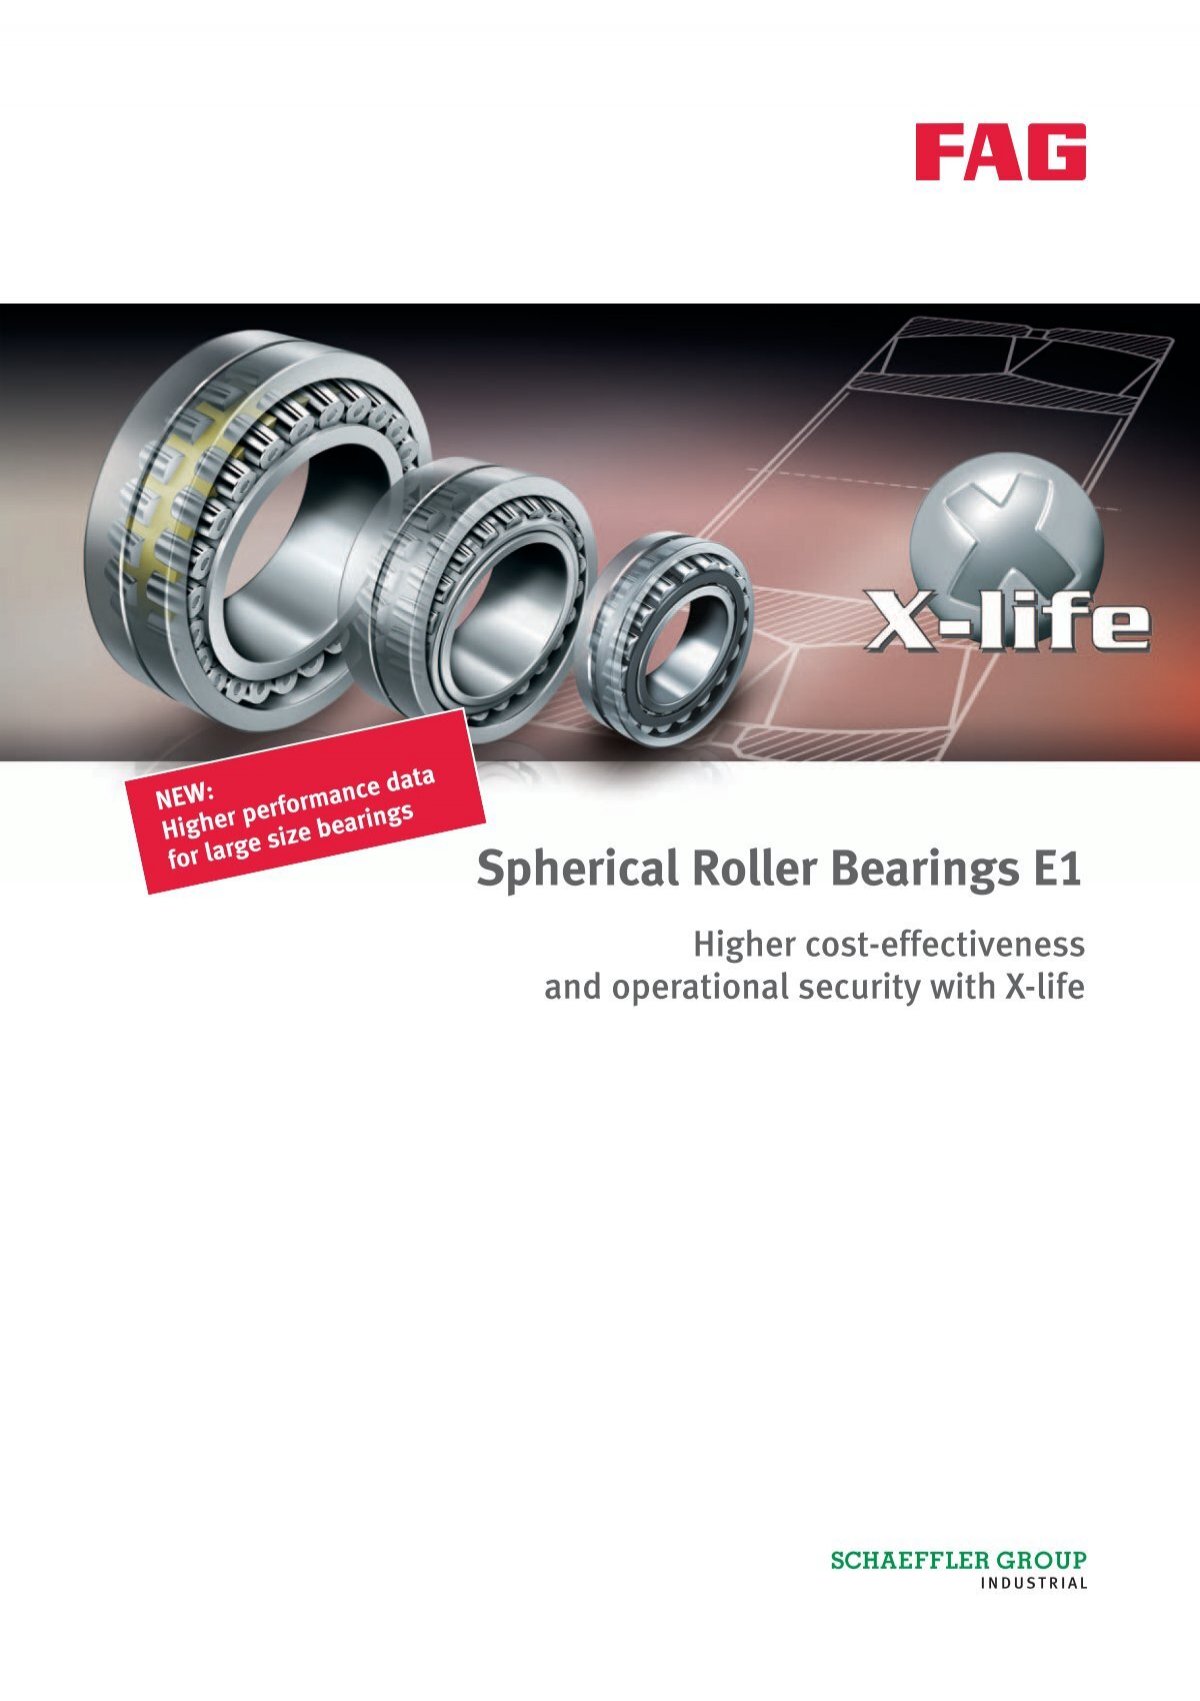 FAG spherical roller bearings E1 - Schaeffler Group